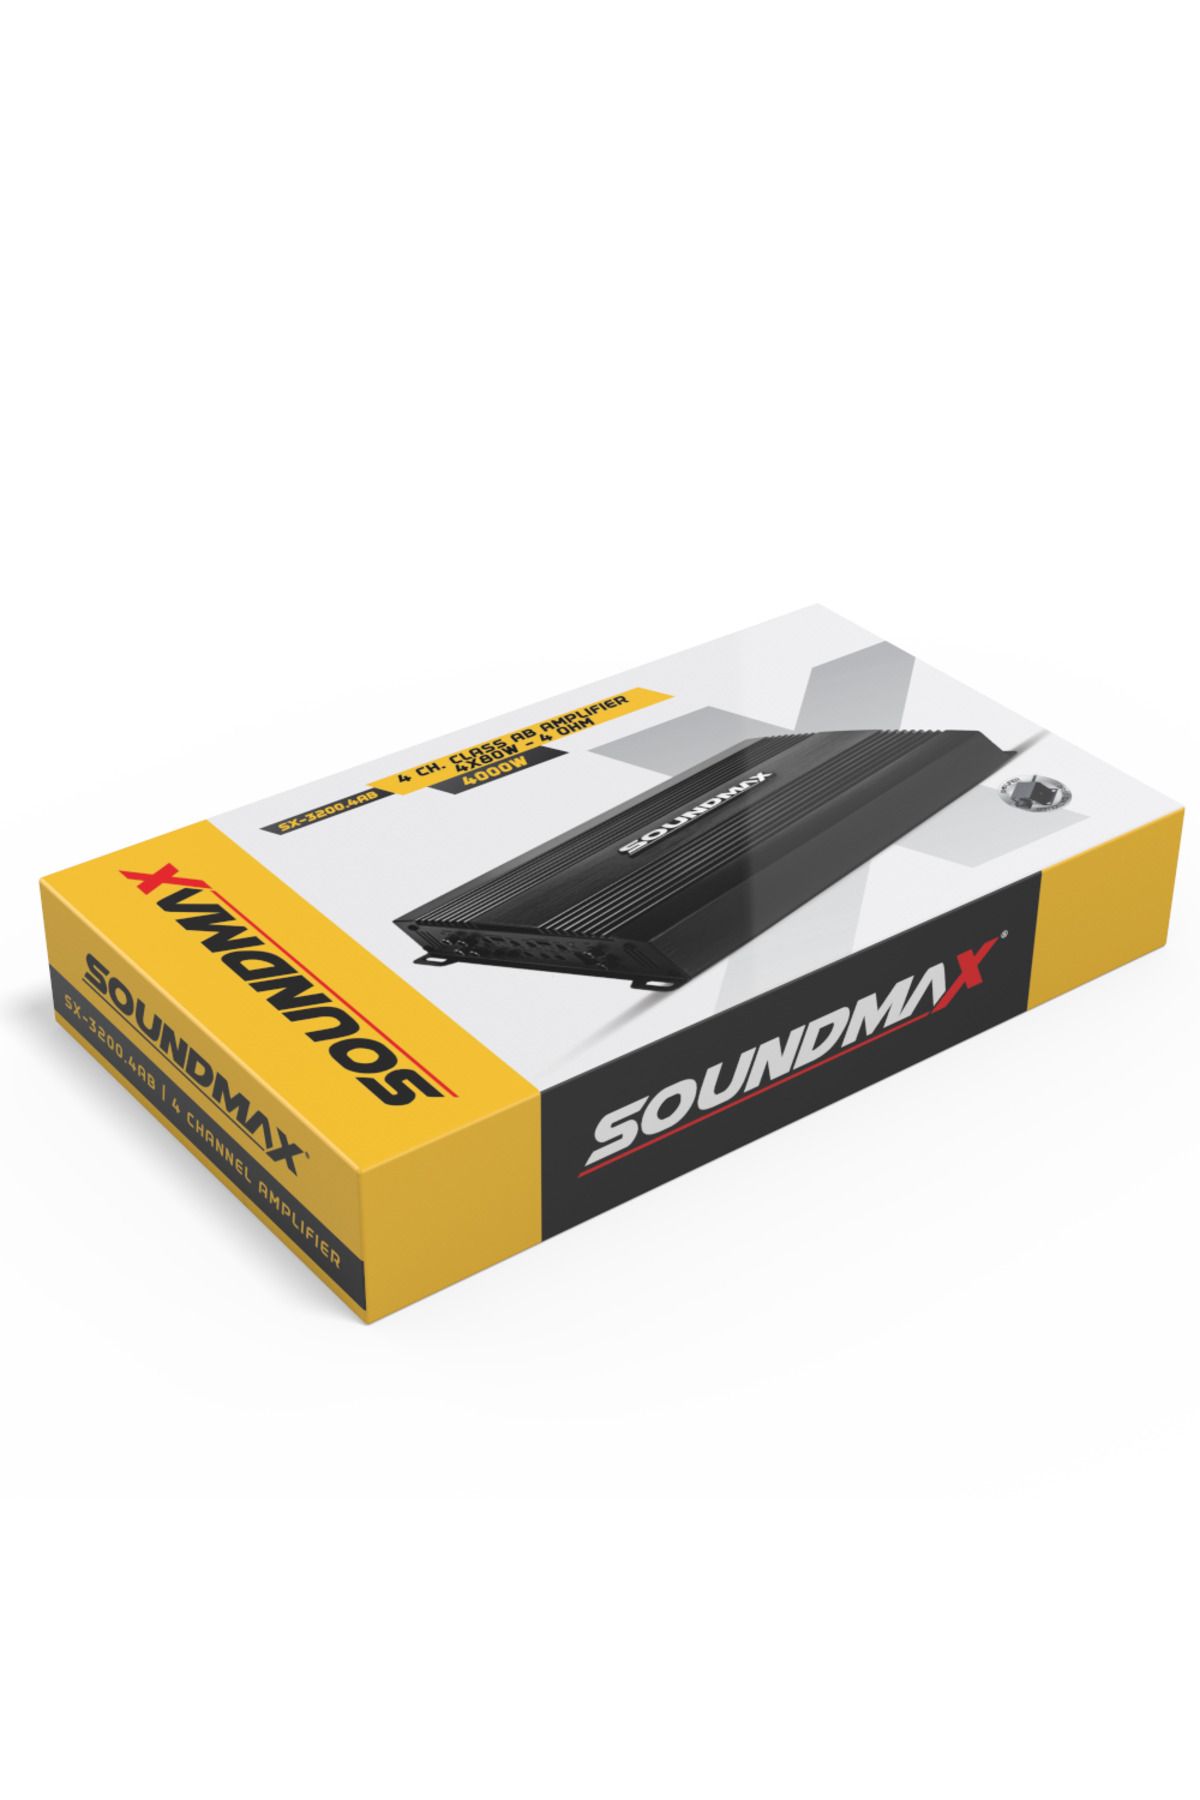 Soundmax SX-3200.4AB-4 KANAL-4000W-4X80W RMS-BAS KONTROLLU-PROFESYONEL ANFİ